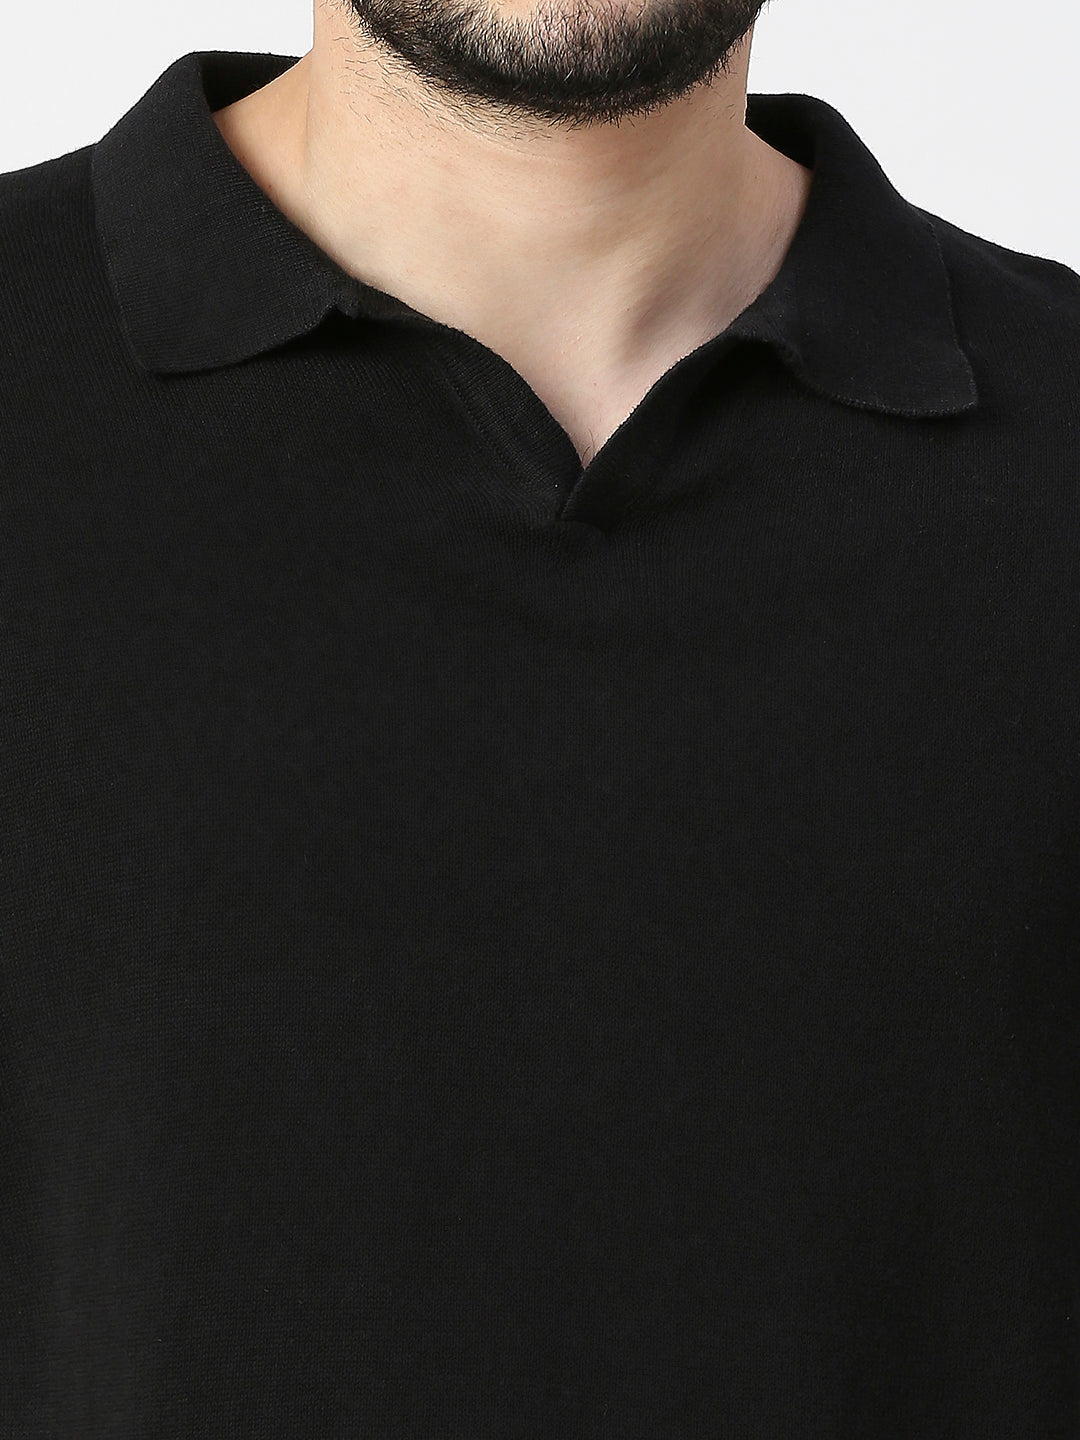 Buy Blamblack Solid Black Flat Knit Polo Tshirt